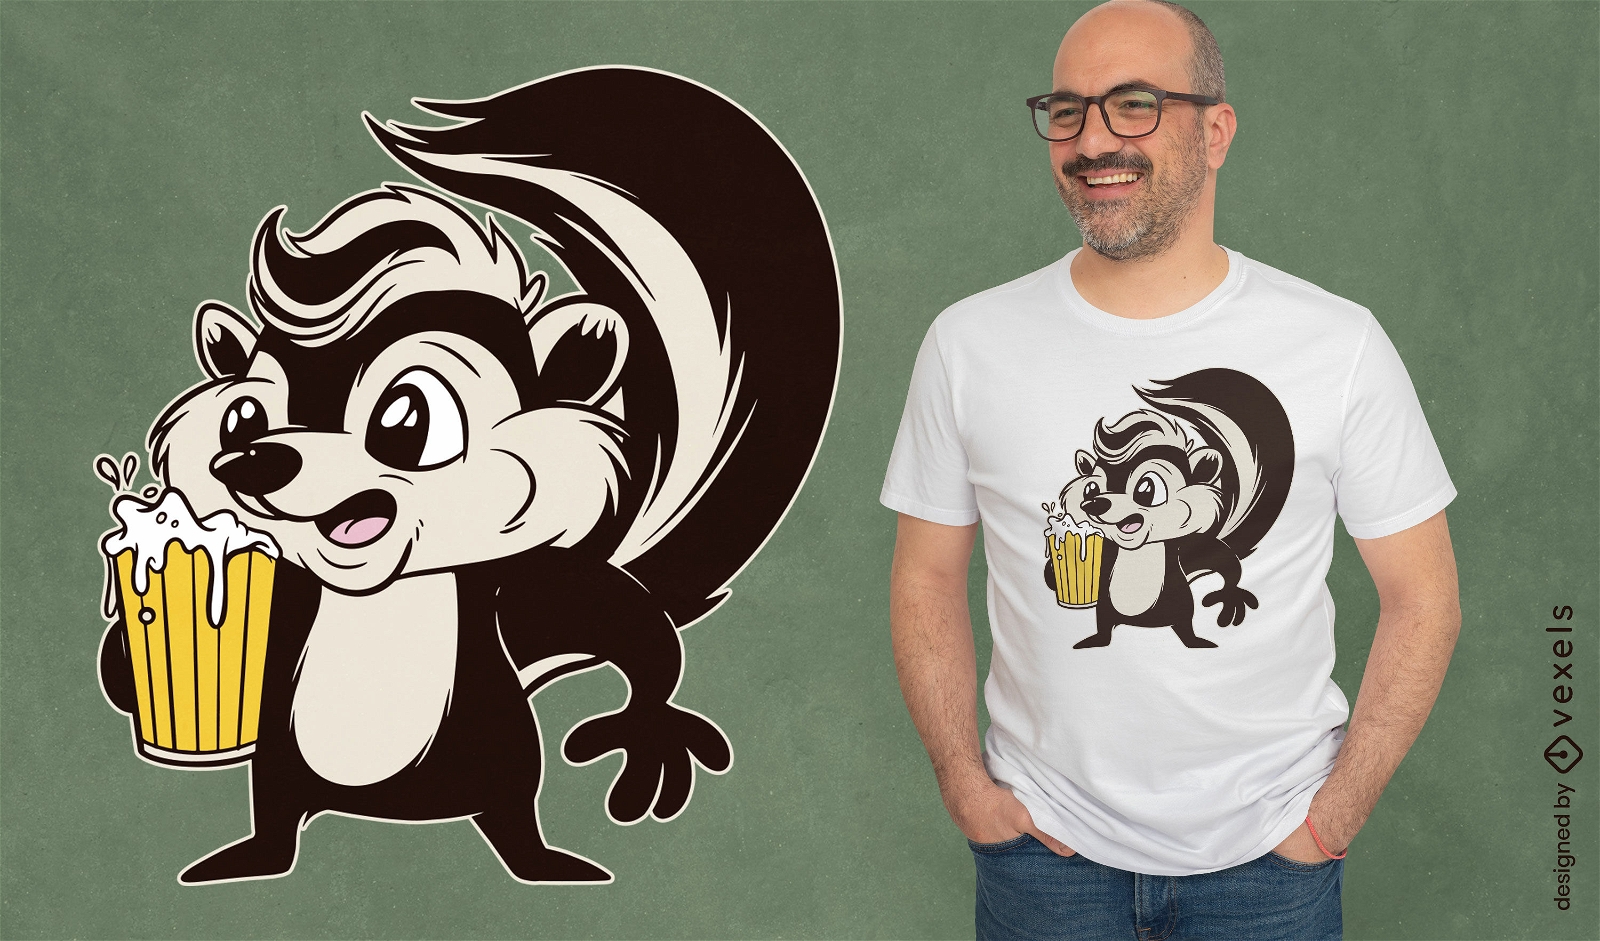 Skunk animal with beer cartoon t-shirt design